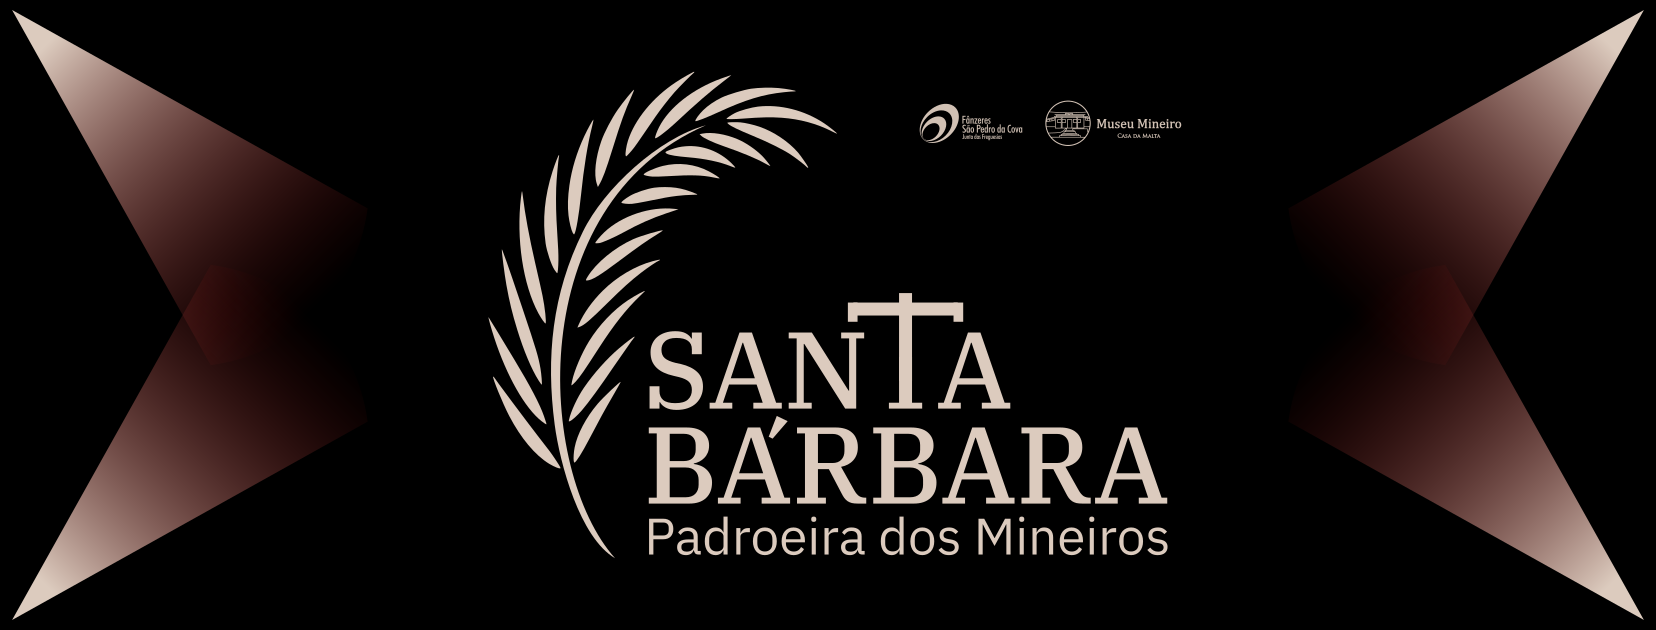 Santa Bárbara Padroeira dos Mineiros